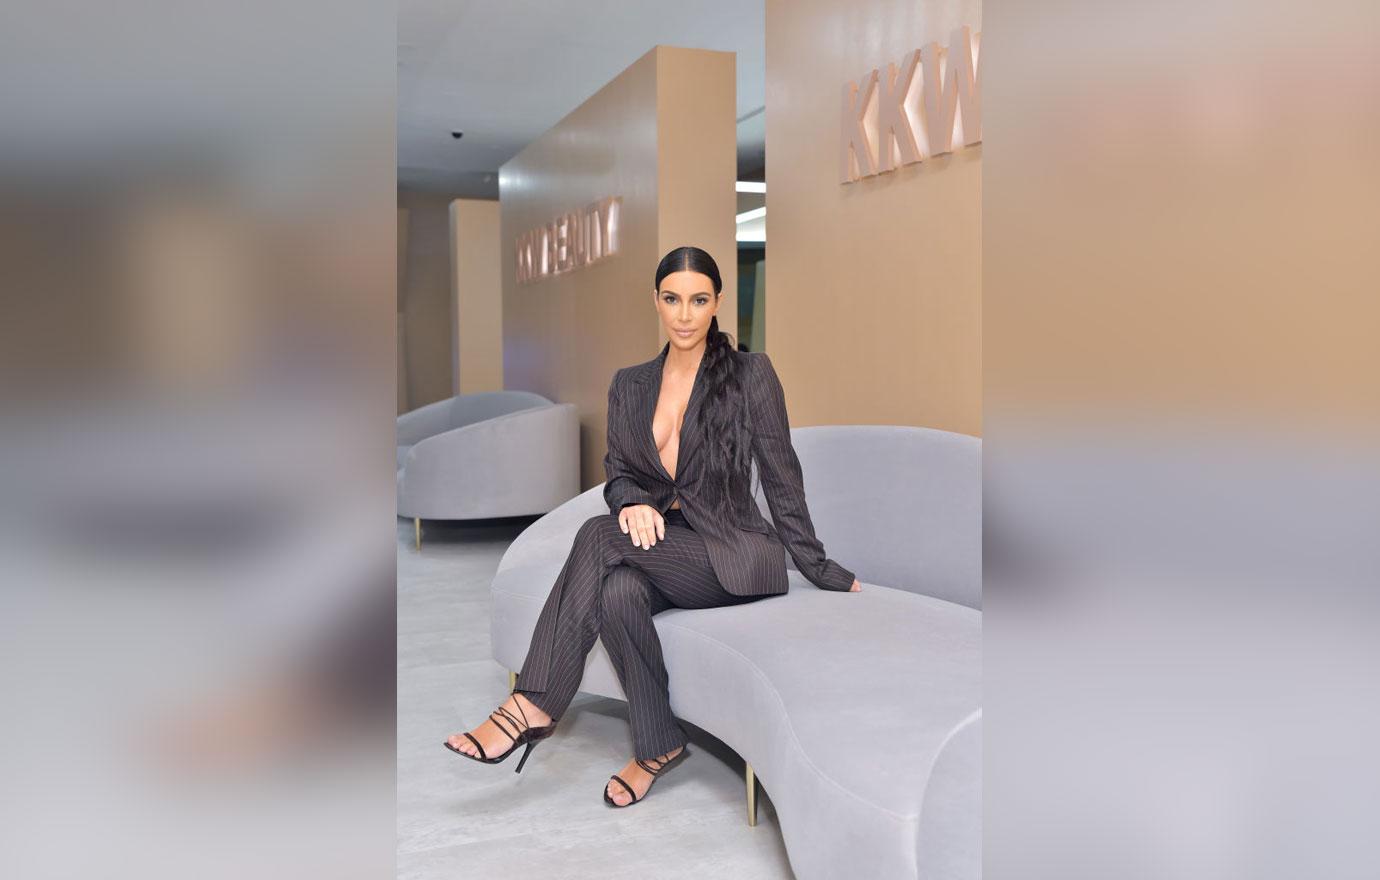 Kim Kardashian Covers Sunburn With KKW Body Foundation